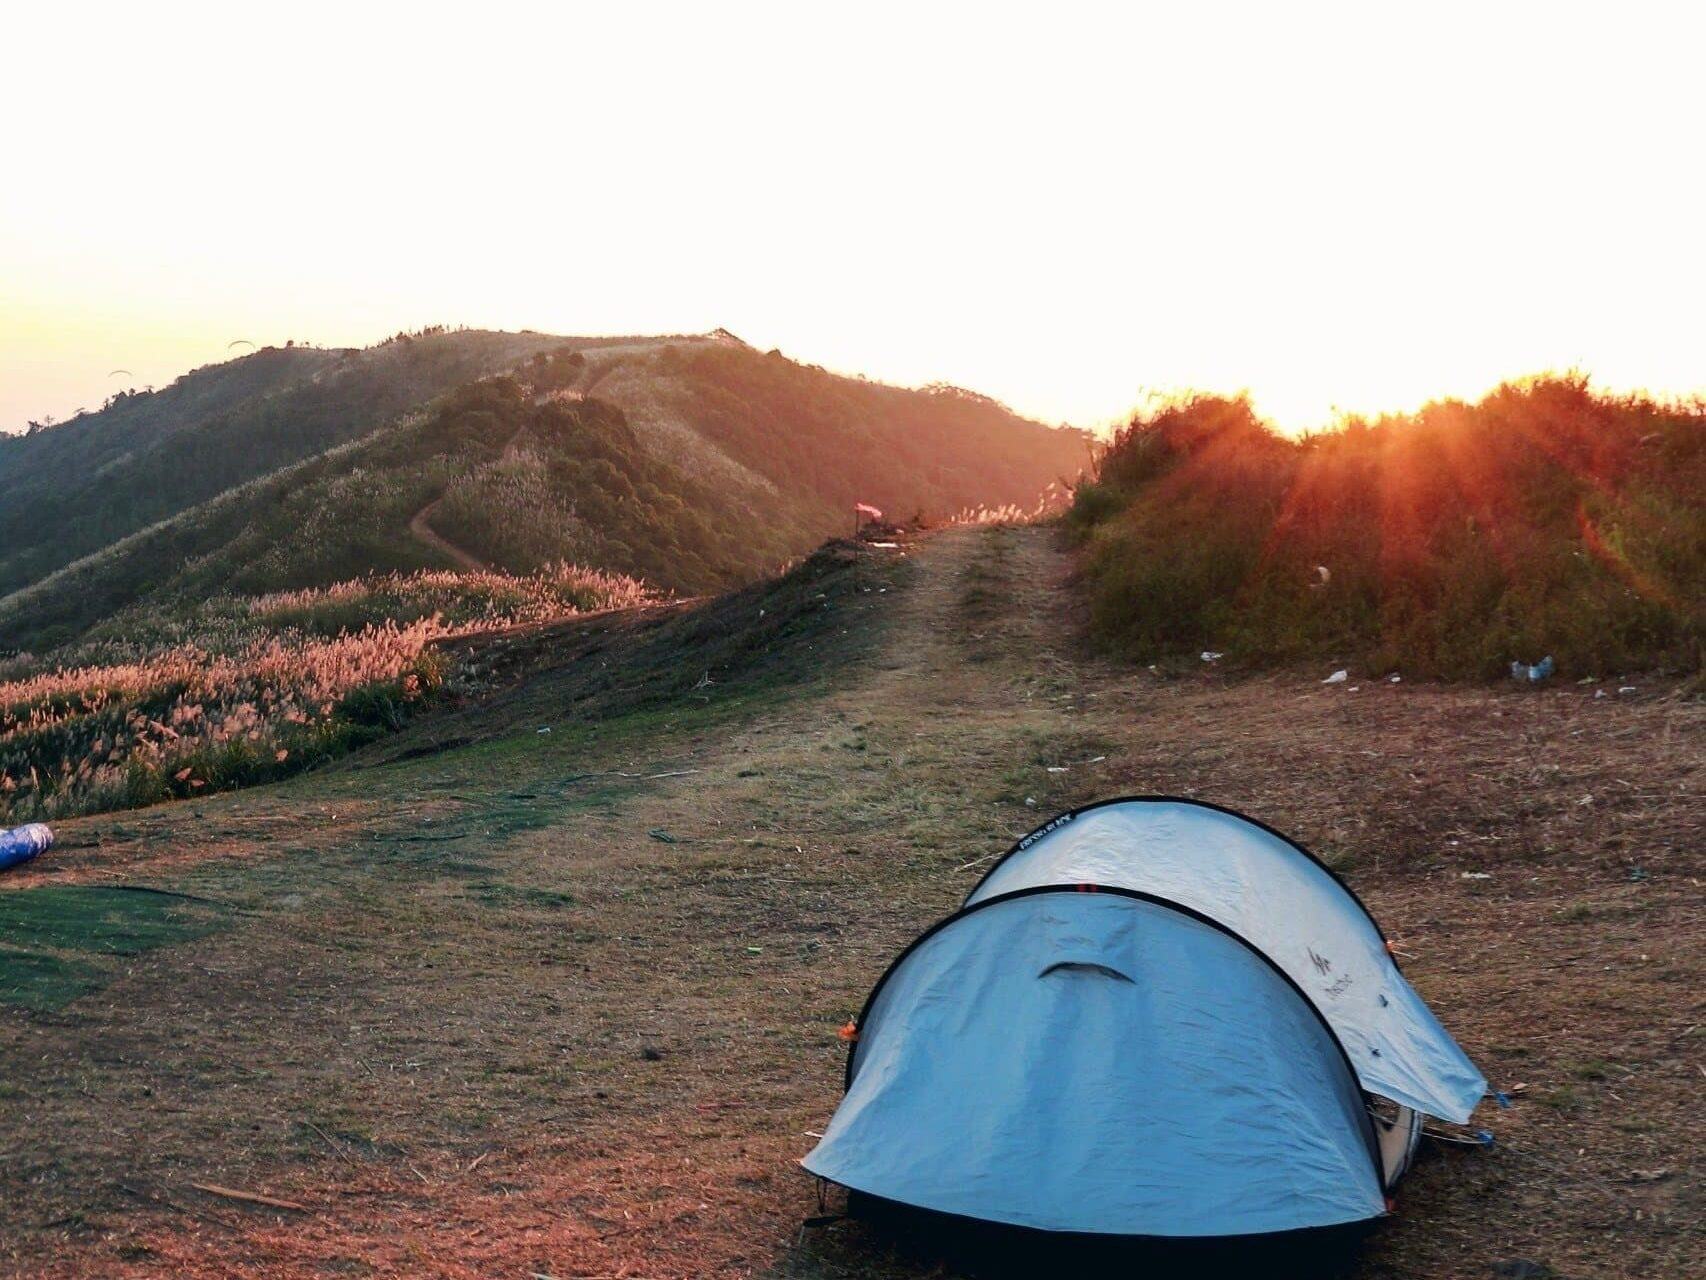 Đến điểm camping tại đồi Bù di chuyển như thế nào?